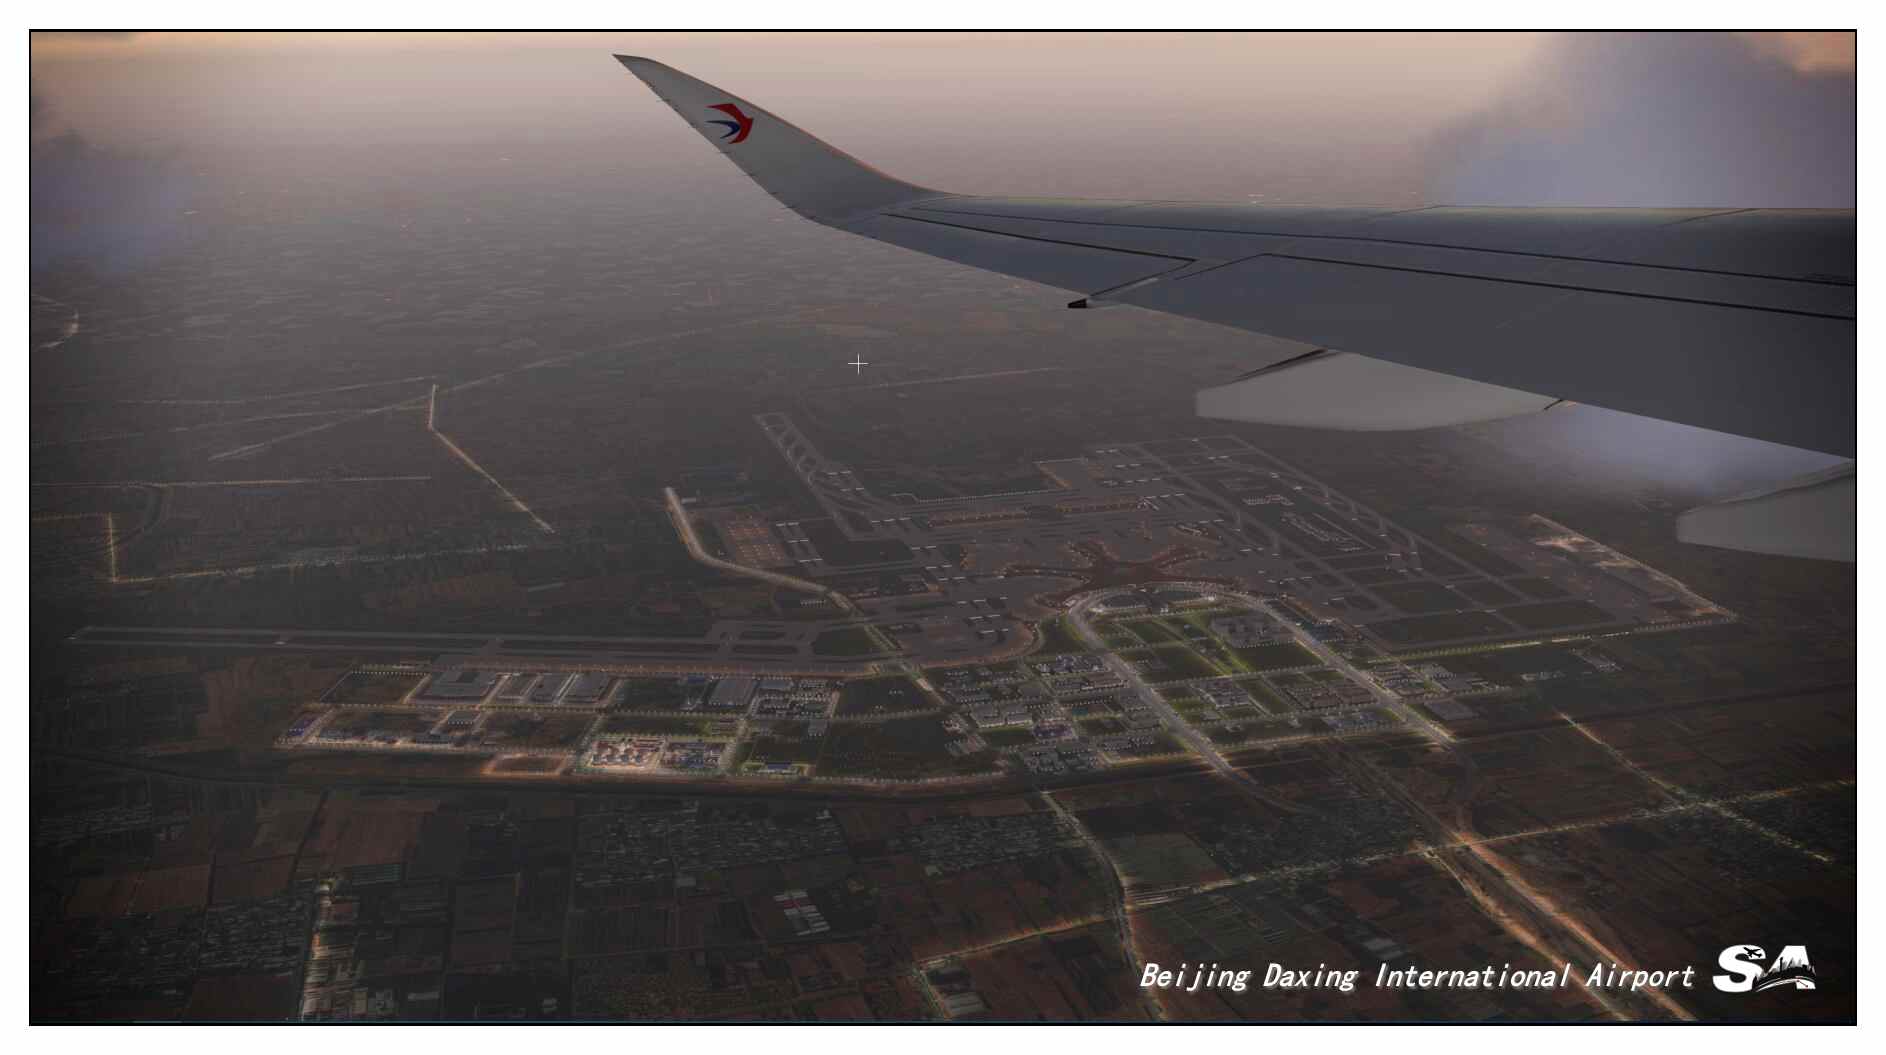 【X-Plane】ZBAD北京大兴国际机场-正式发布-2461 